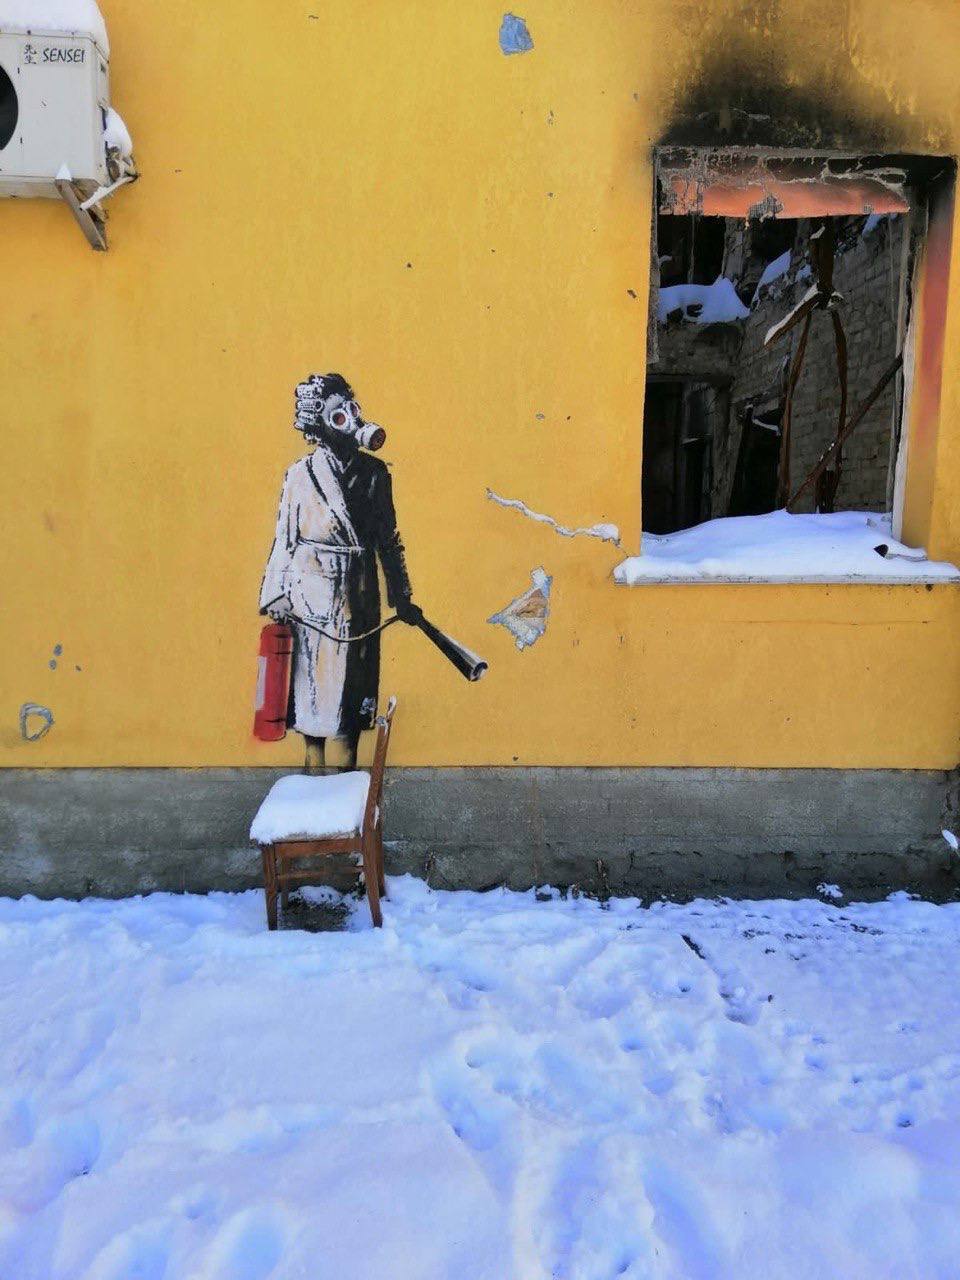 Граффити Бенкси, срезанное злоумышленниками в Гостомеле, оставили на хранение в полиции: будет проведена экспертиза. Фото и видео